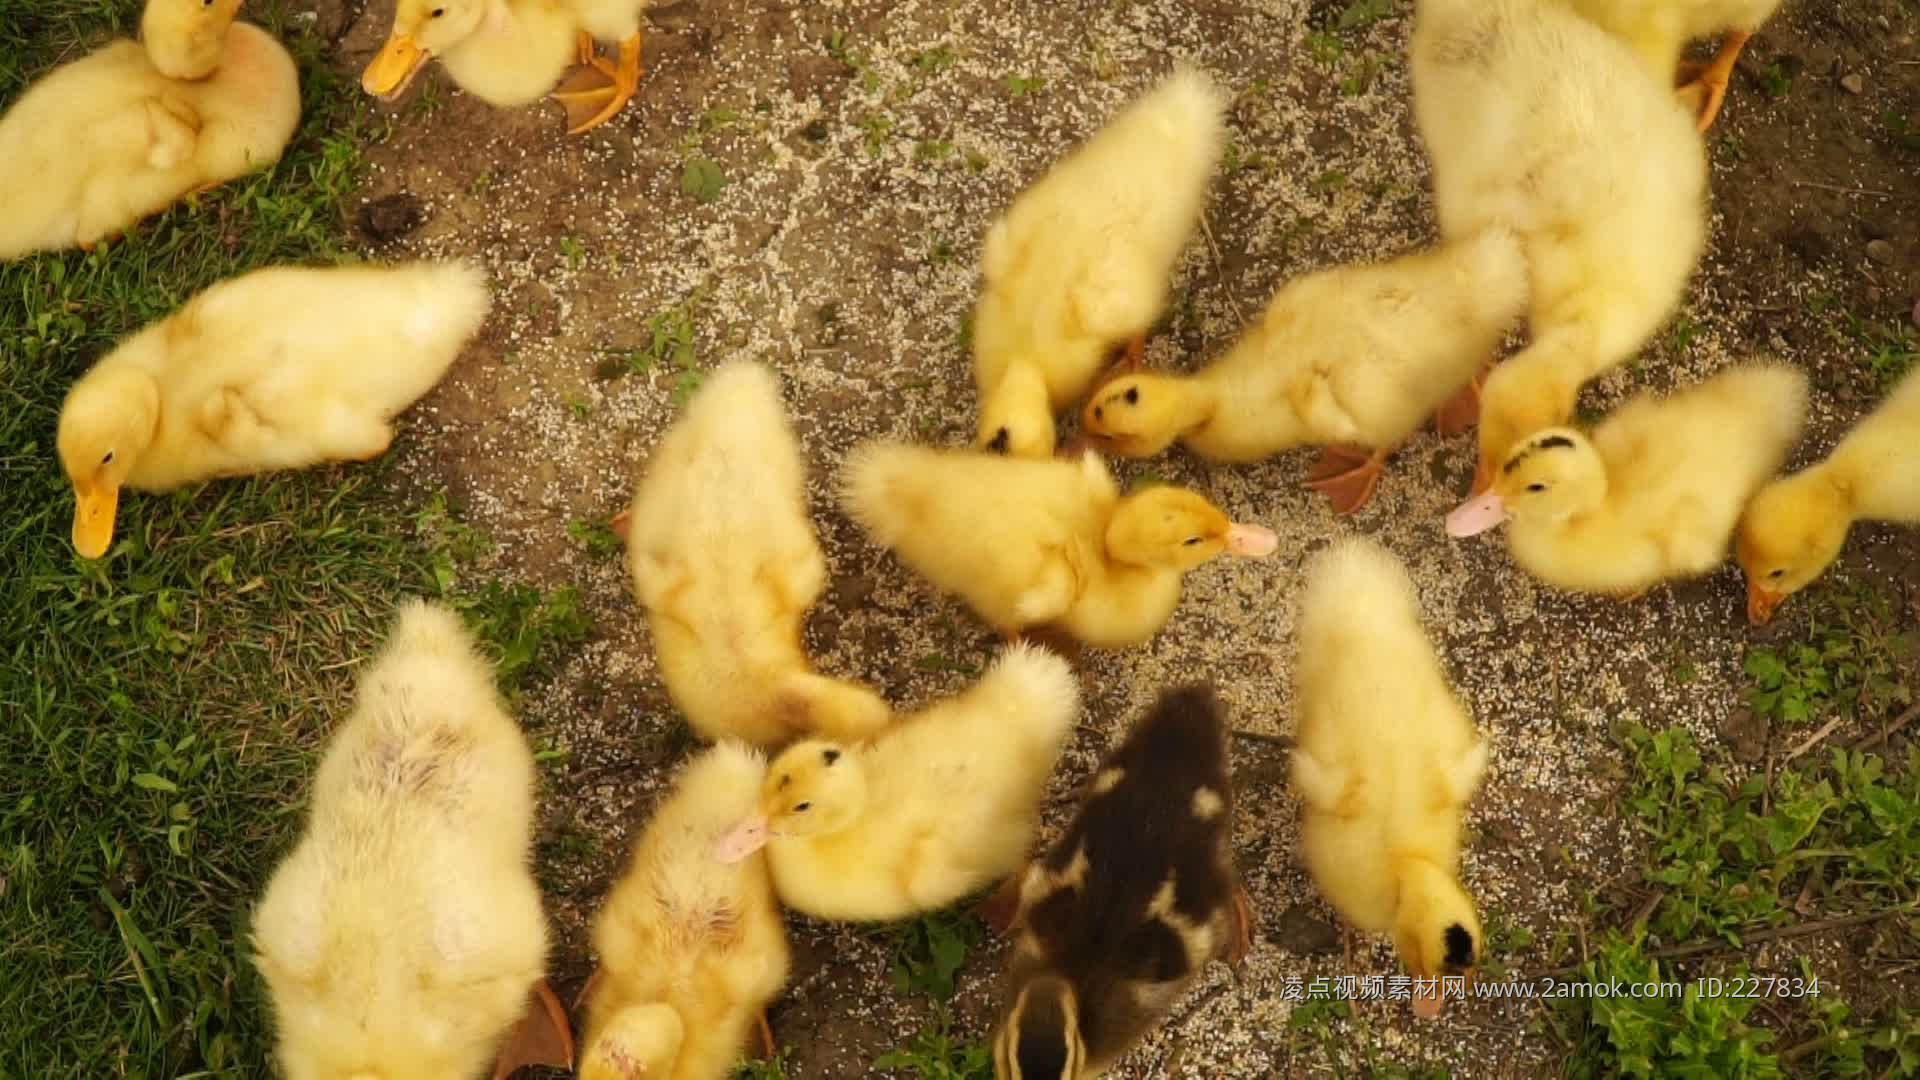 新出生的鸭子 库存照片. 图片 包括有 问候, 少许, 上色, 愉快, 烧杯, 期初的, 甜甜, 春天, 鸭子 - 2138972